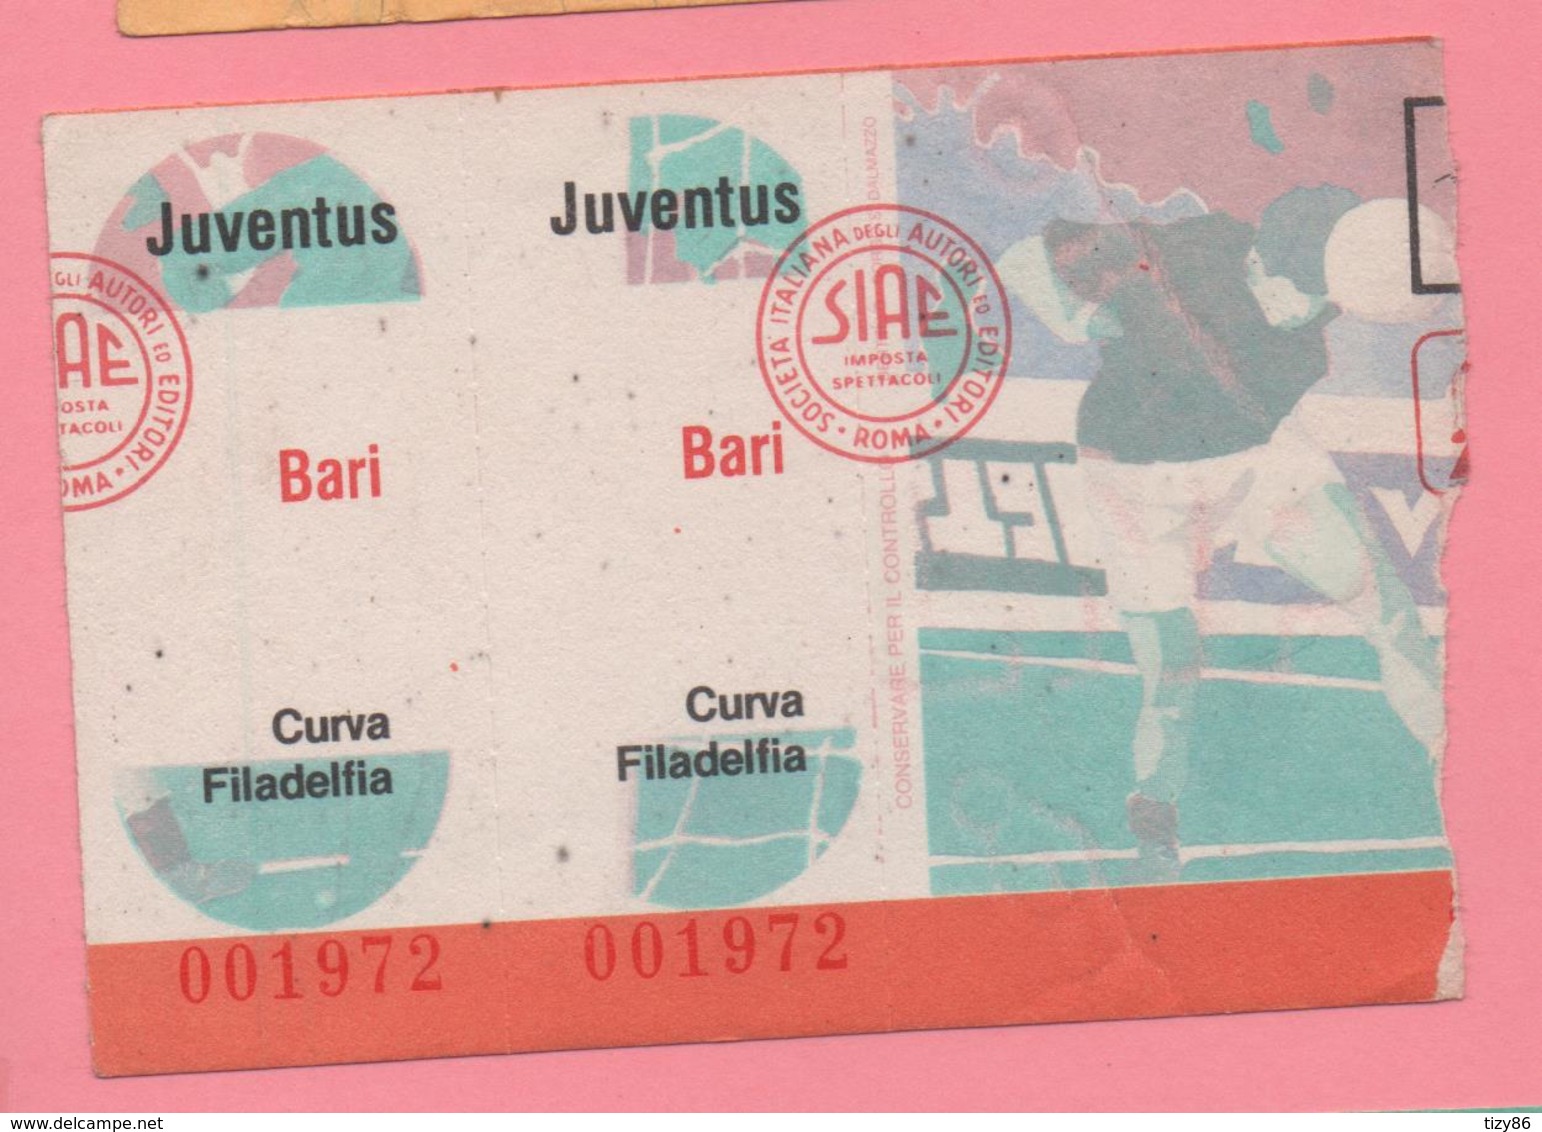 Biglietto D'ingresso Stadio Juventus Bari - Tickets - Vouchers